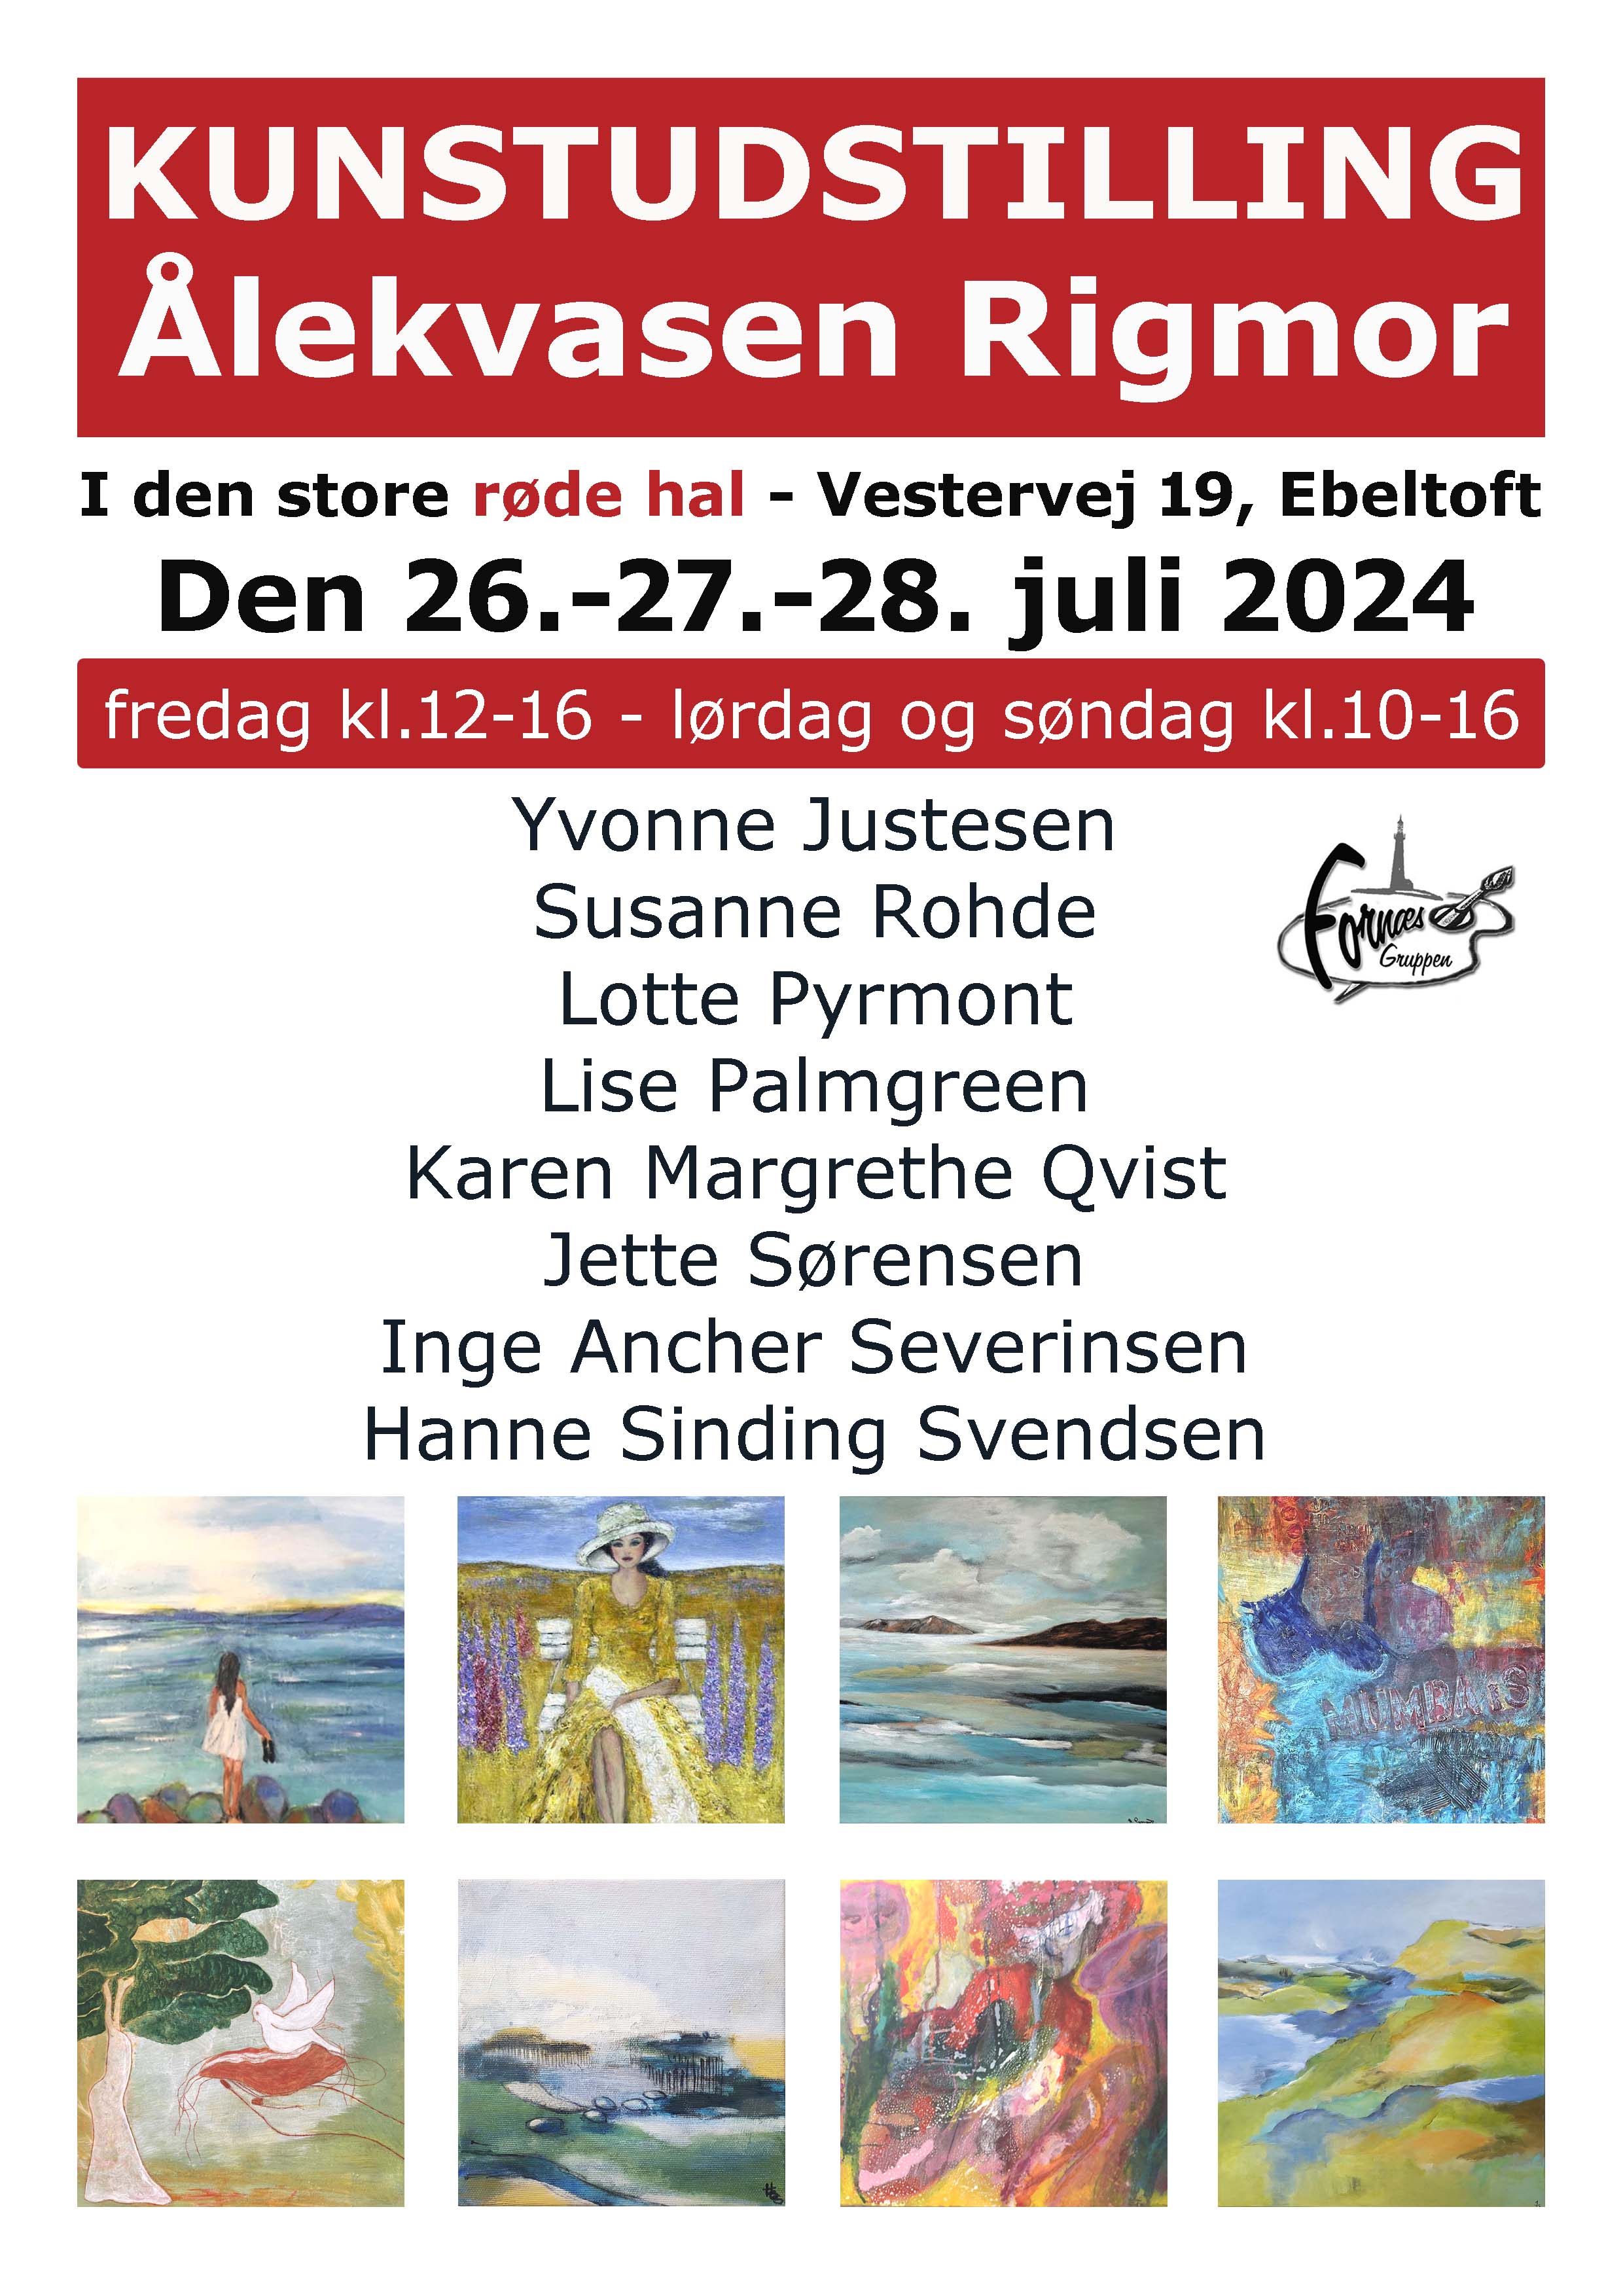 Ålekvasen Rigmor i Ebeltoft 26-27-28 juli 2024